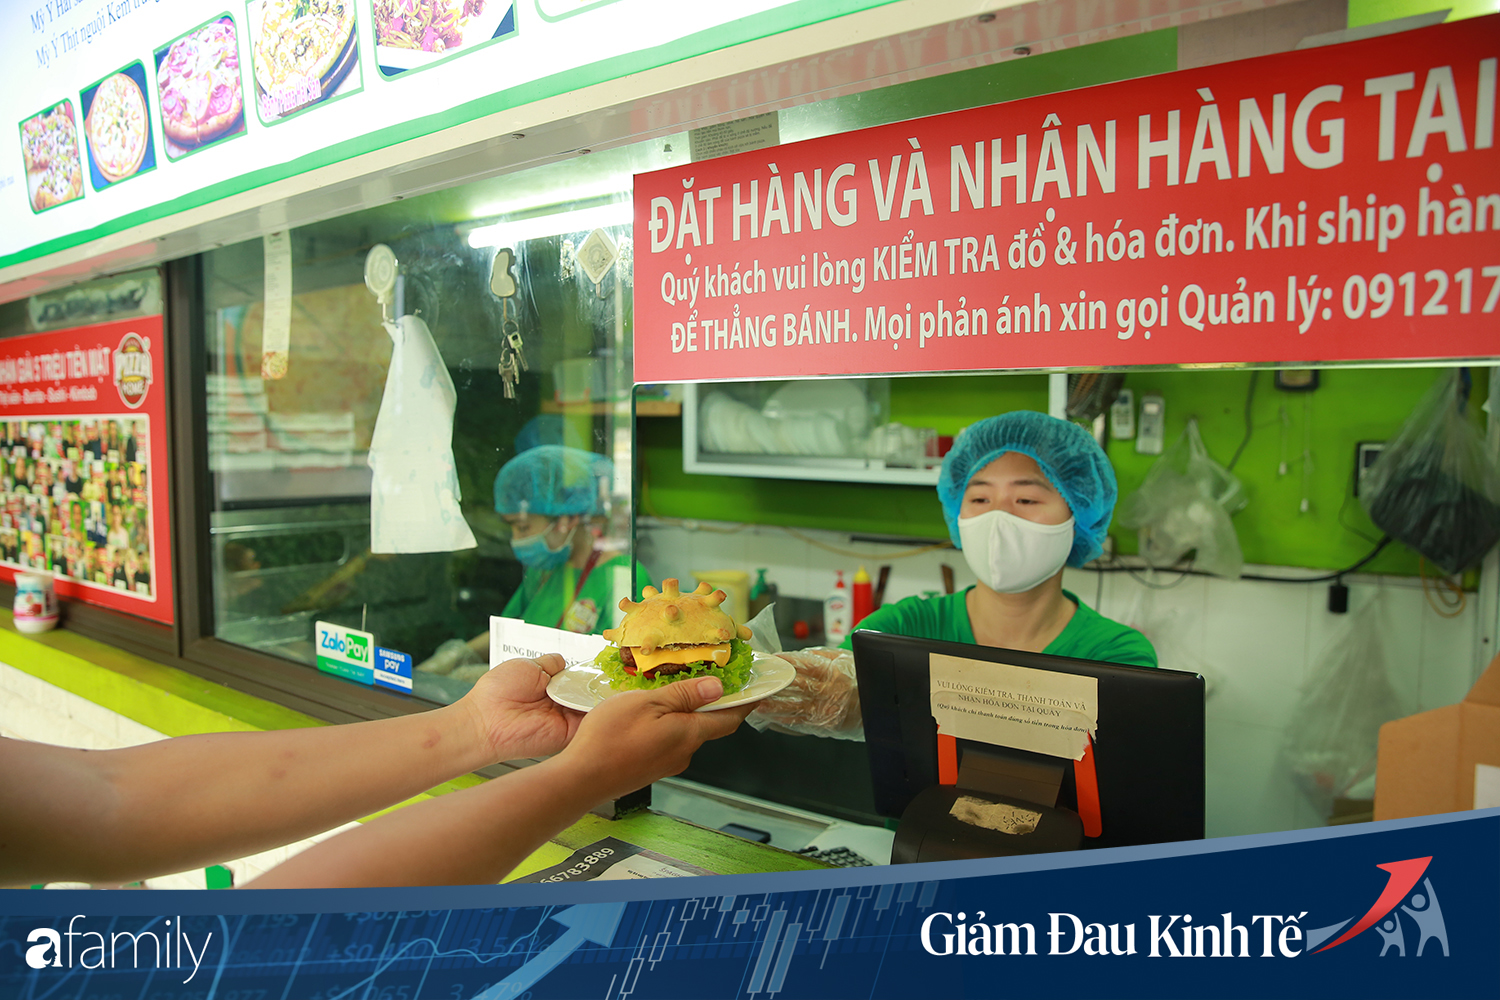 Chuyện lạ có thật ở Hà Nội: Cửa hàng làm bánh burger... corona nhằm truyền cảm hứng chống dịch - Ảnh 9.